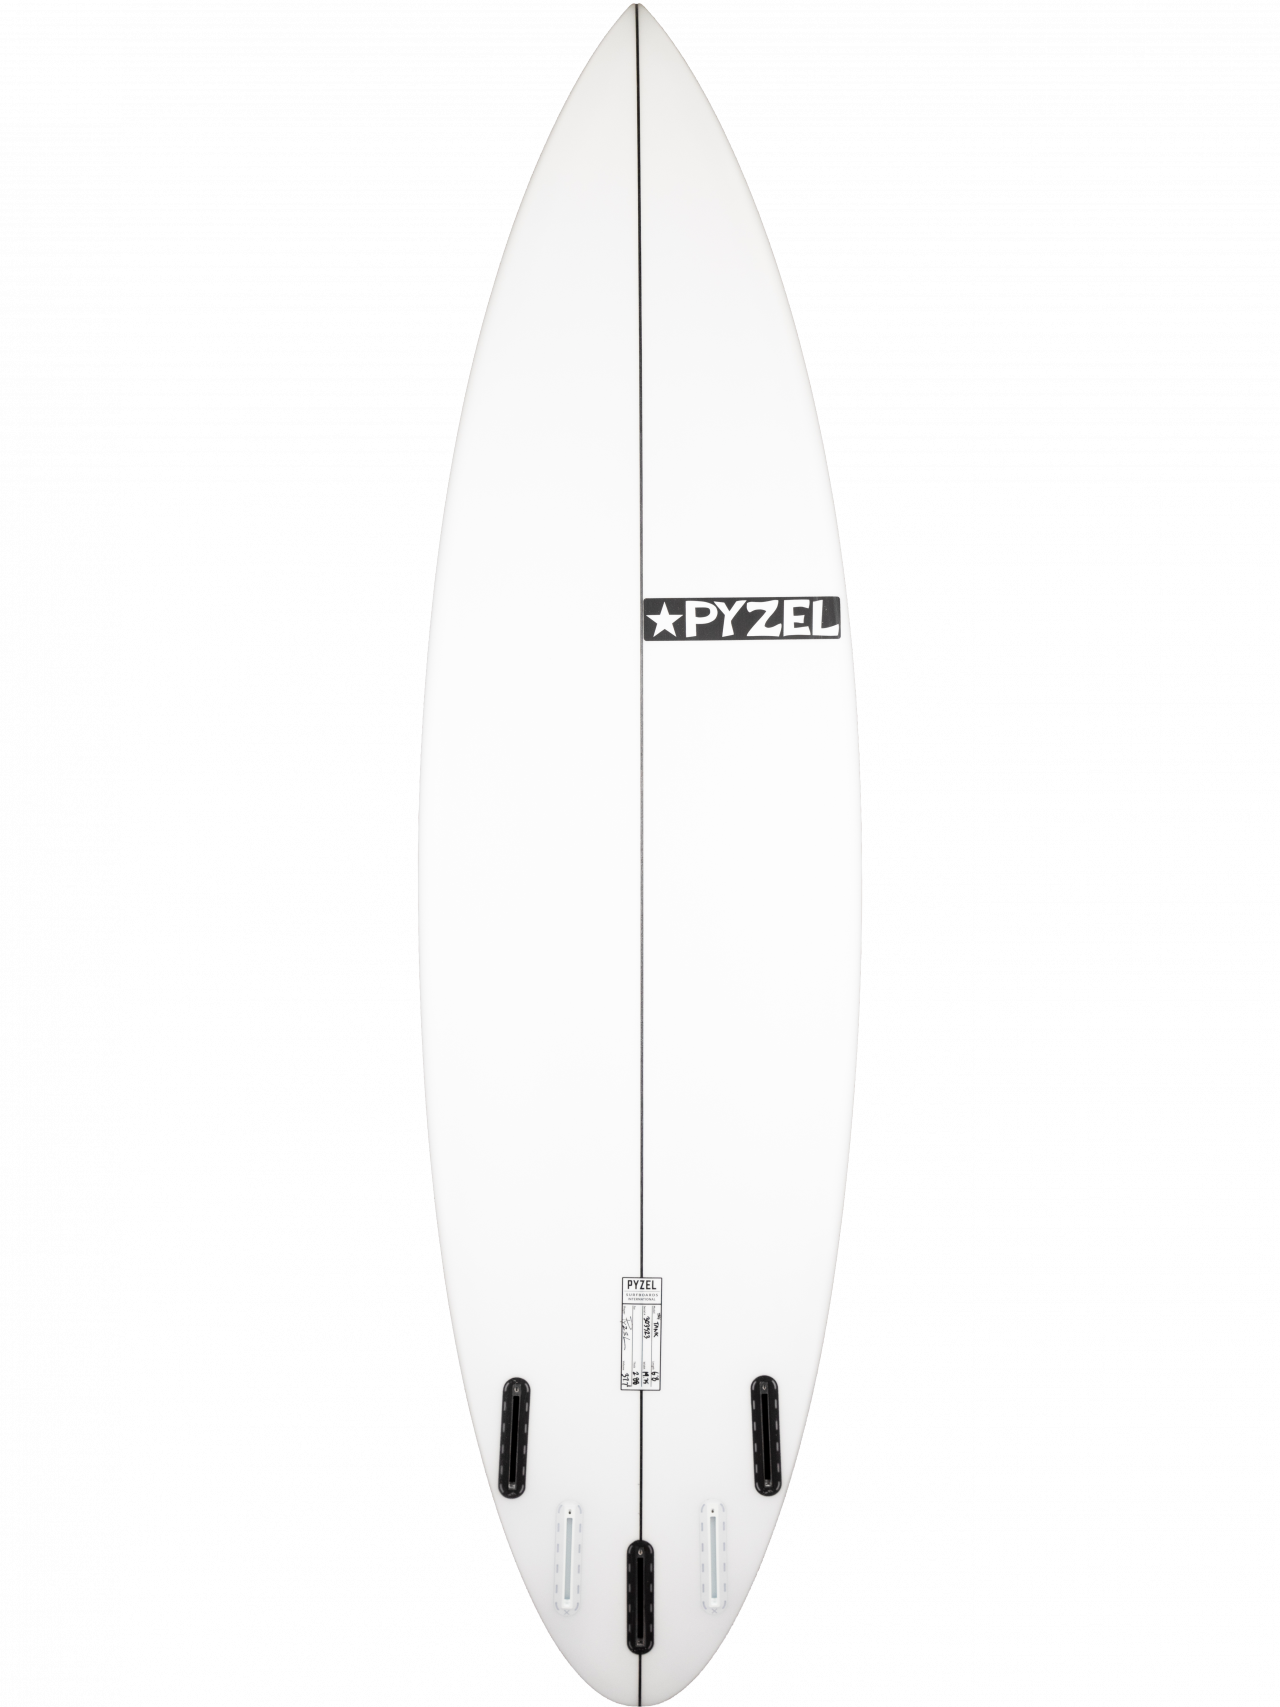 Pyzel Surfboards - Tank